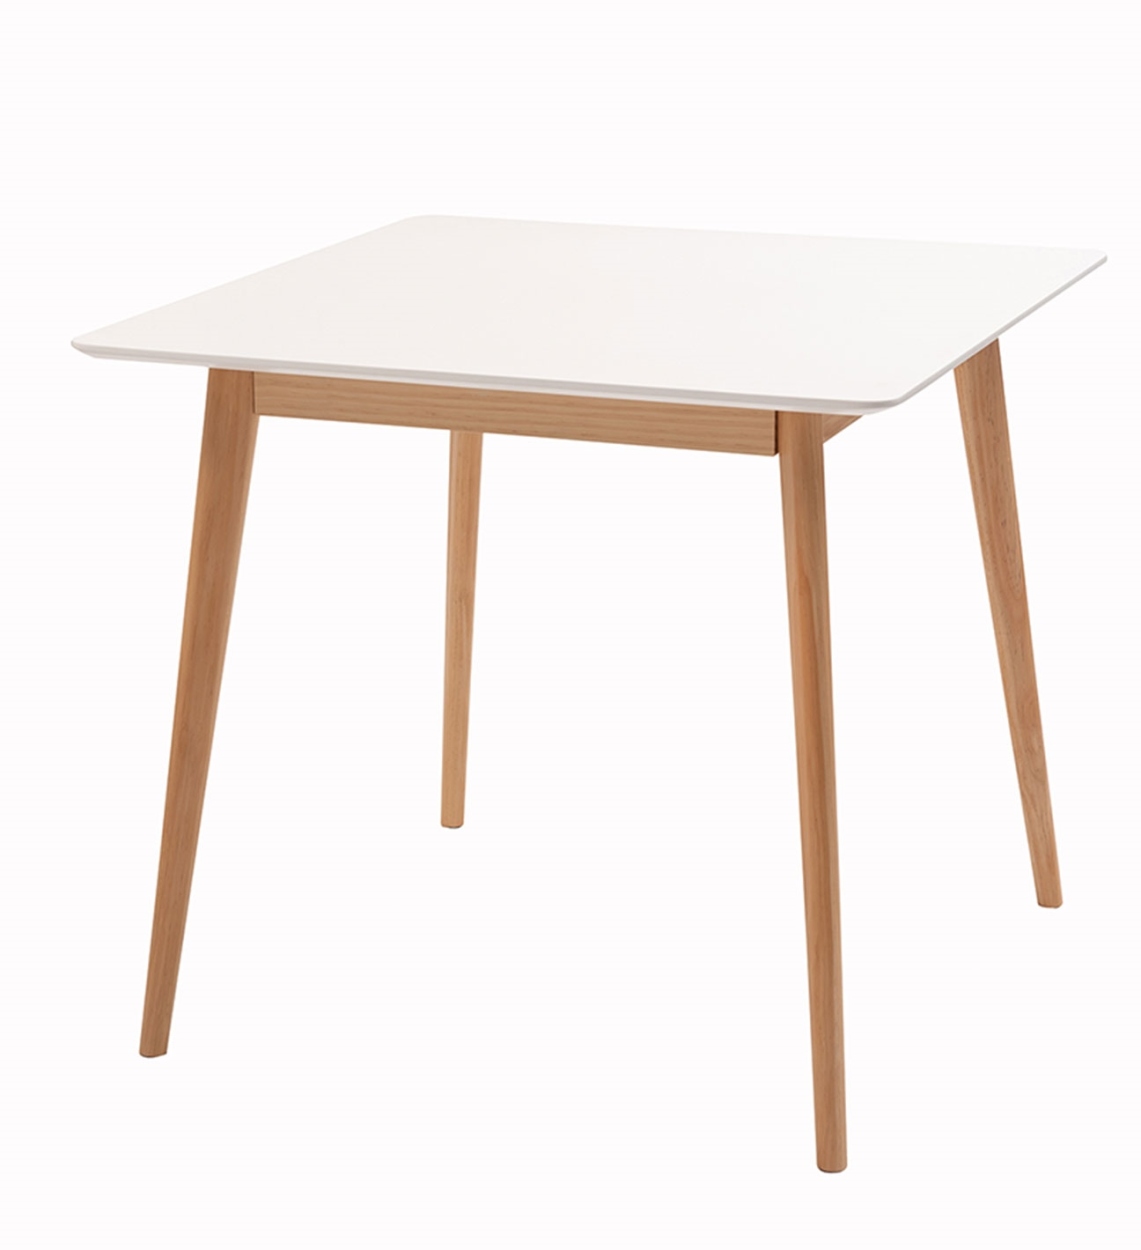 ダイニングテーブル テーブル 食卓テーブル 机 幅80cm 天然木 2人用 スクエアテーブル 正方形 おしゃれ シンプル ホワイト 白 スタイリッシュ  カフェ かわいい